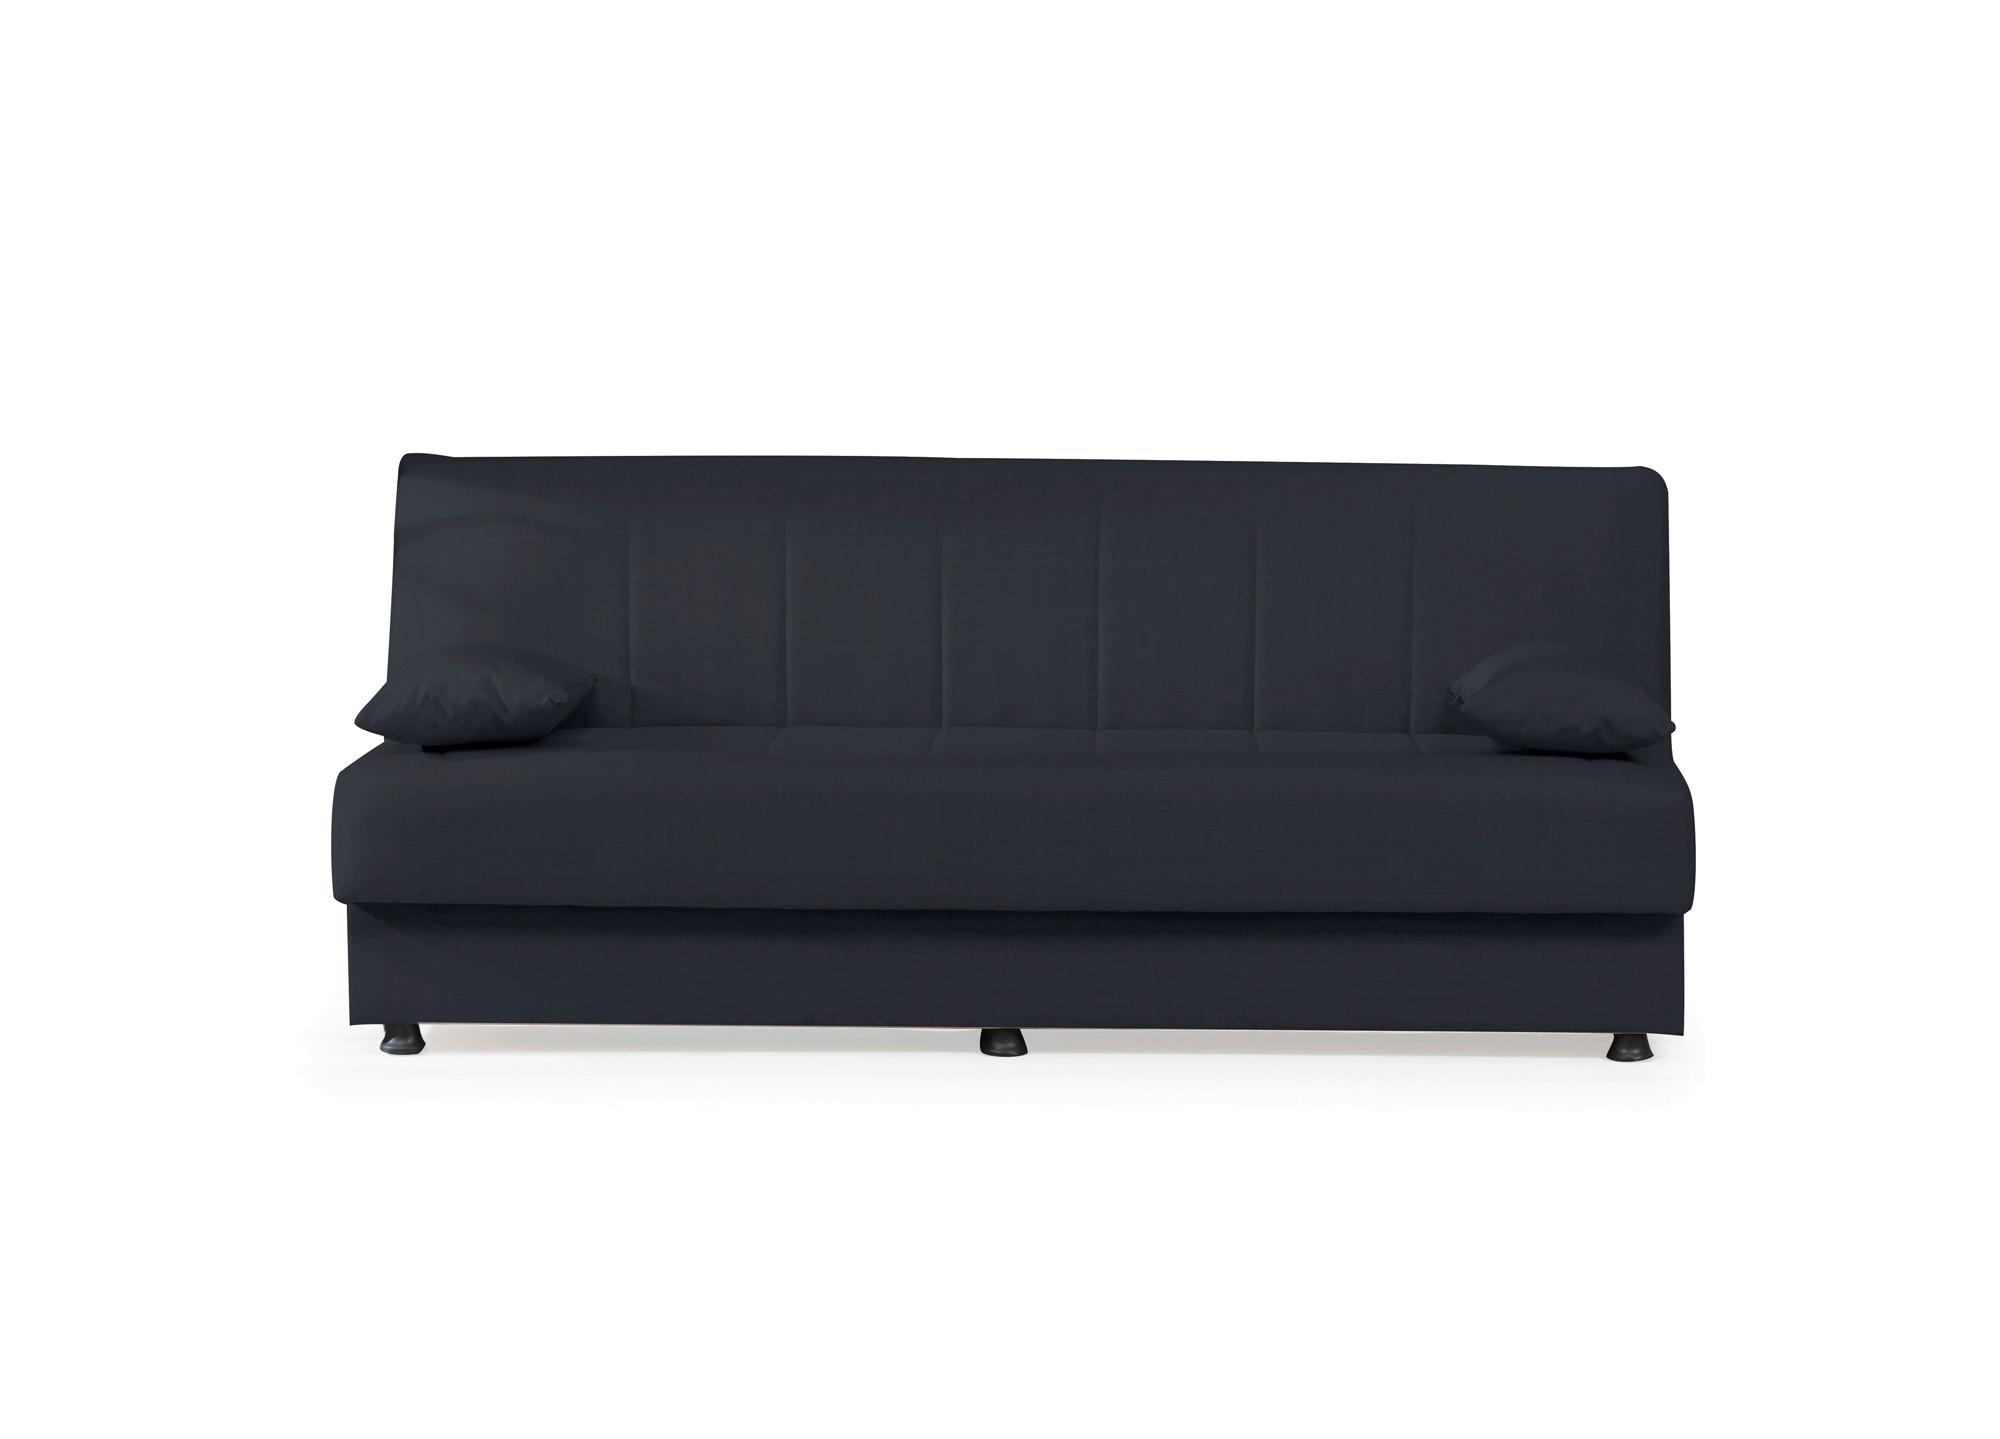 3-Sitzer-Sofa Ege Mit Schlaffunktion Graublau - Graublau/Schwarz, Design, Textil (190/82/82cm) - Livetastic